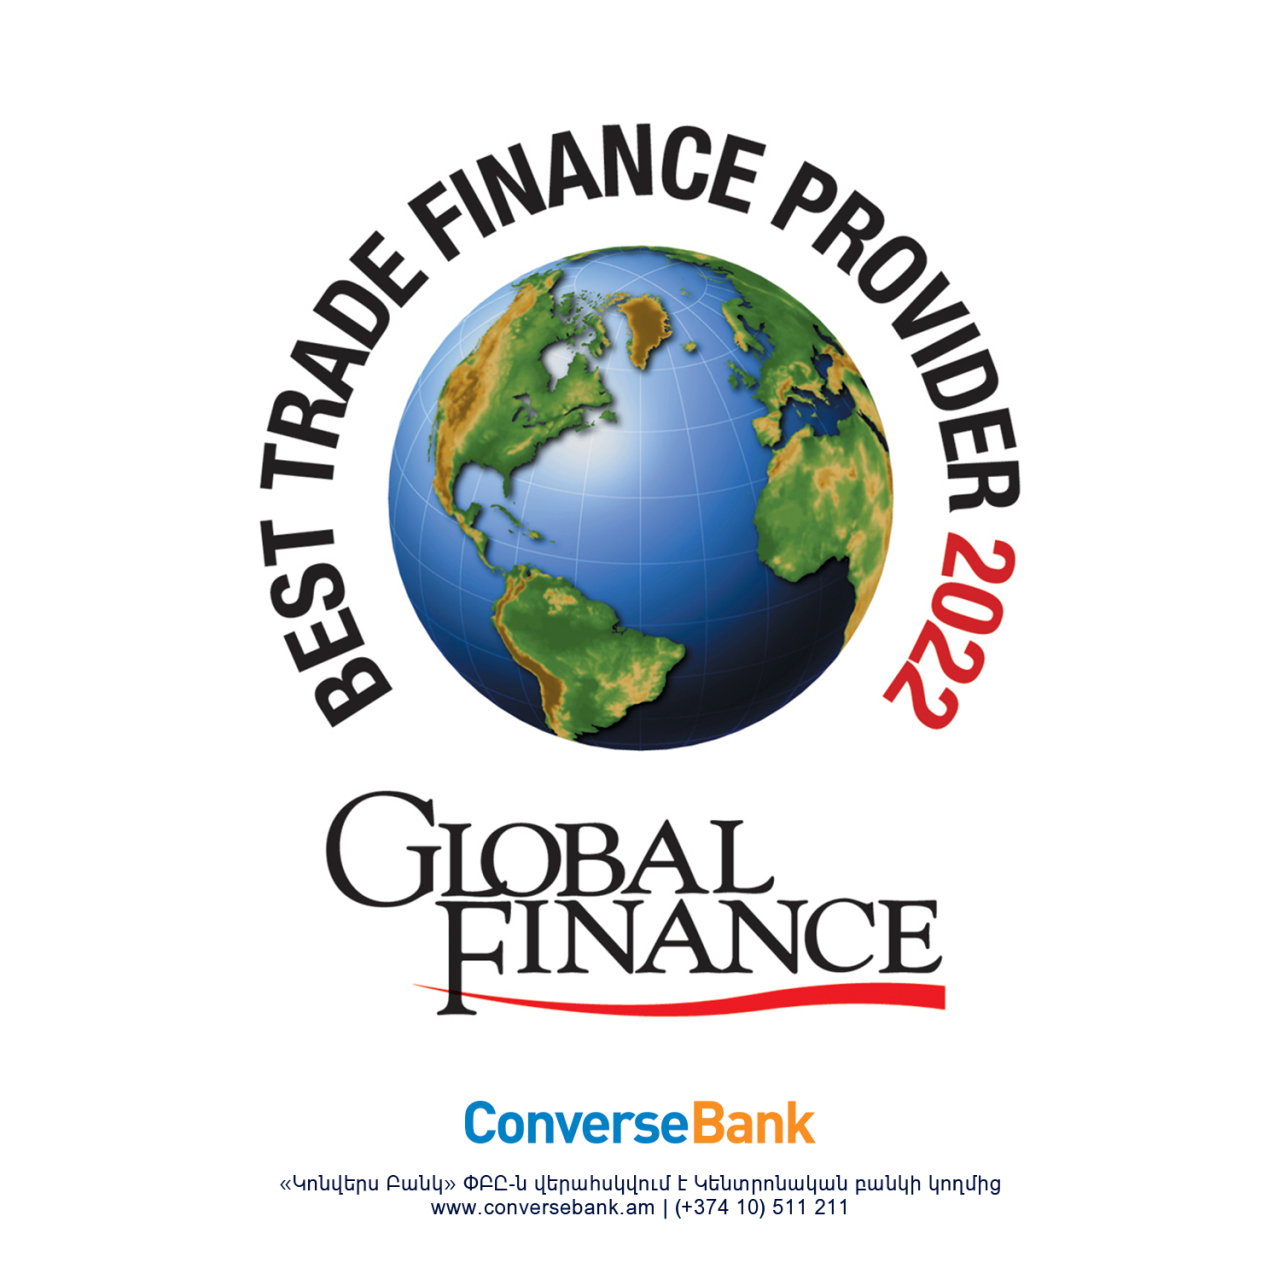 Կոնվերս Բանկը Առեւտրի ֆինանսավորող լավագույն Բանկն է Հայաստանում ըստ Global Finance-ի